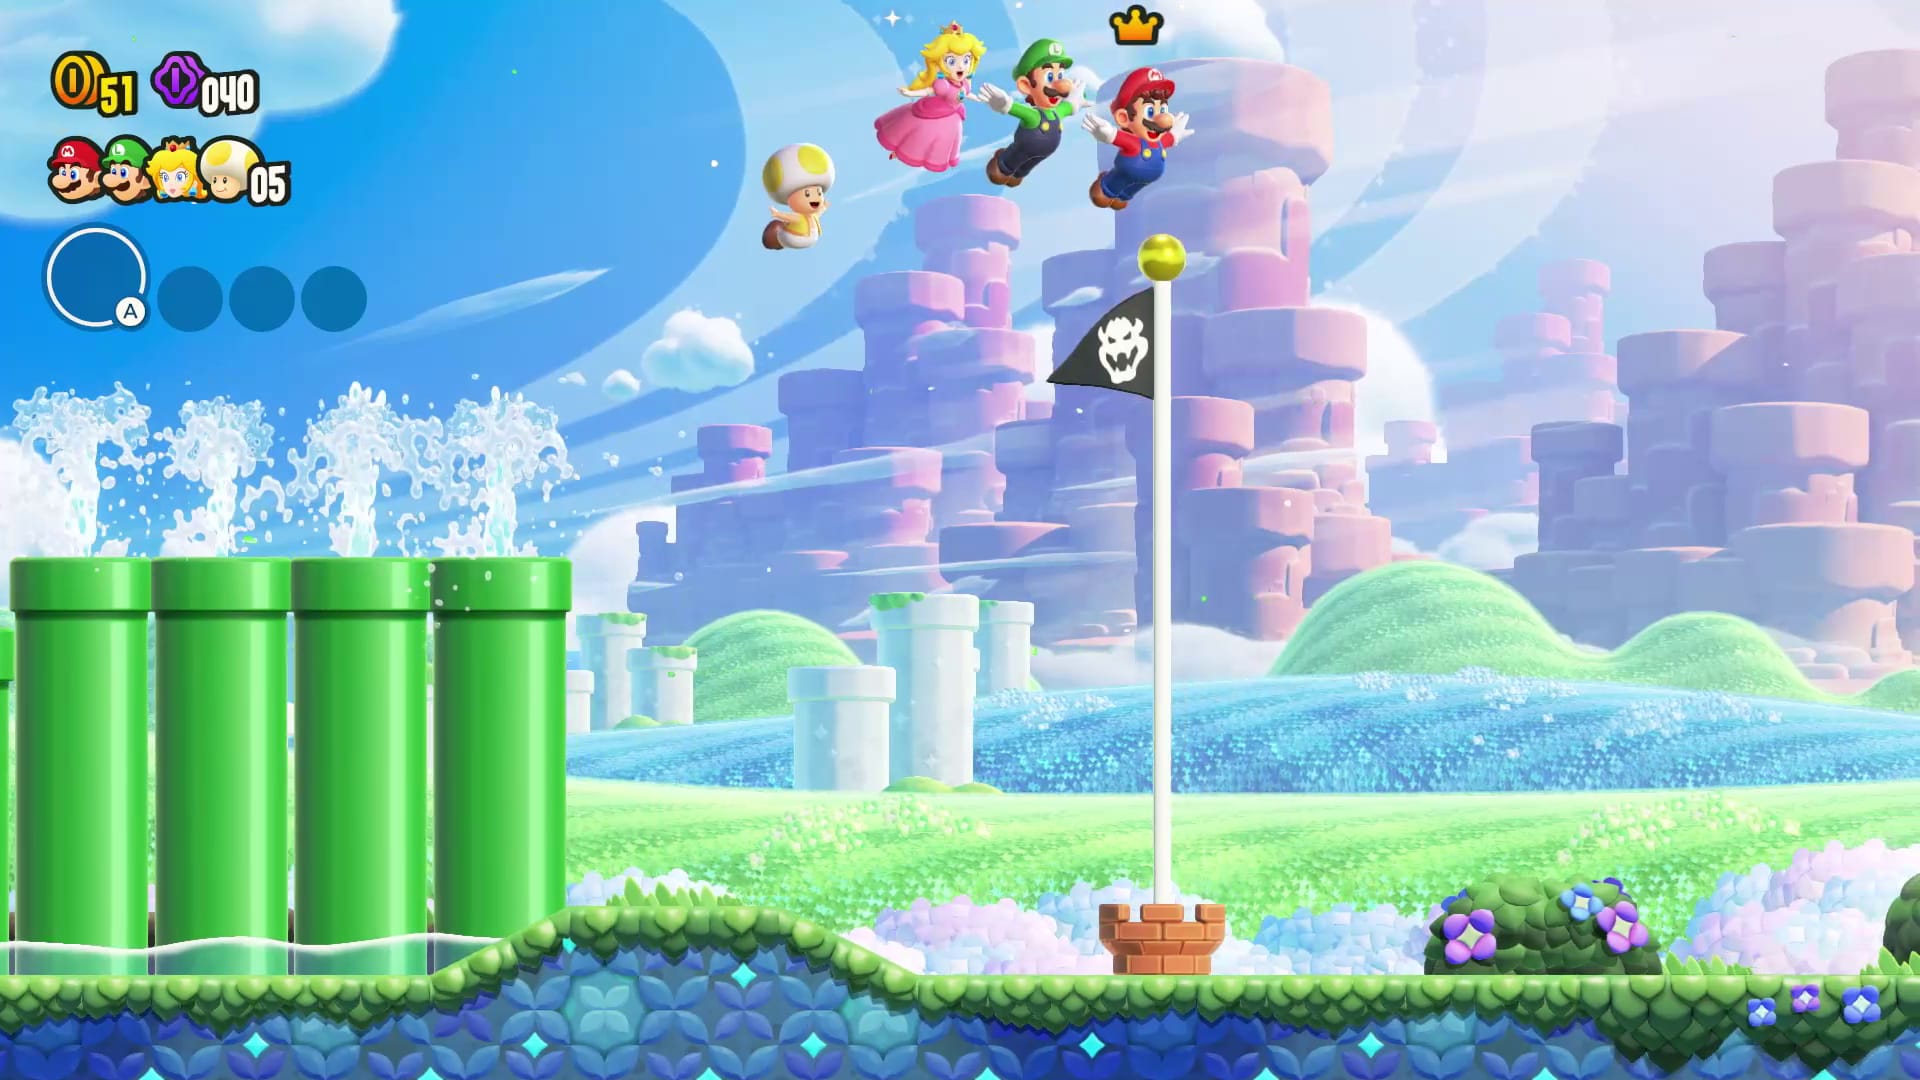 Super Mario Bros.™ Wonder - Nintendo - Compre na Nuuvem